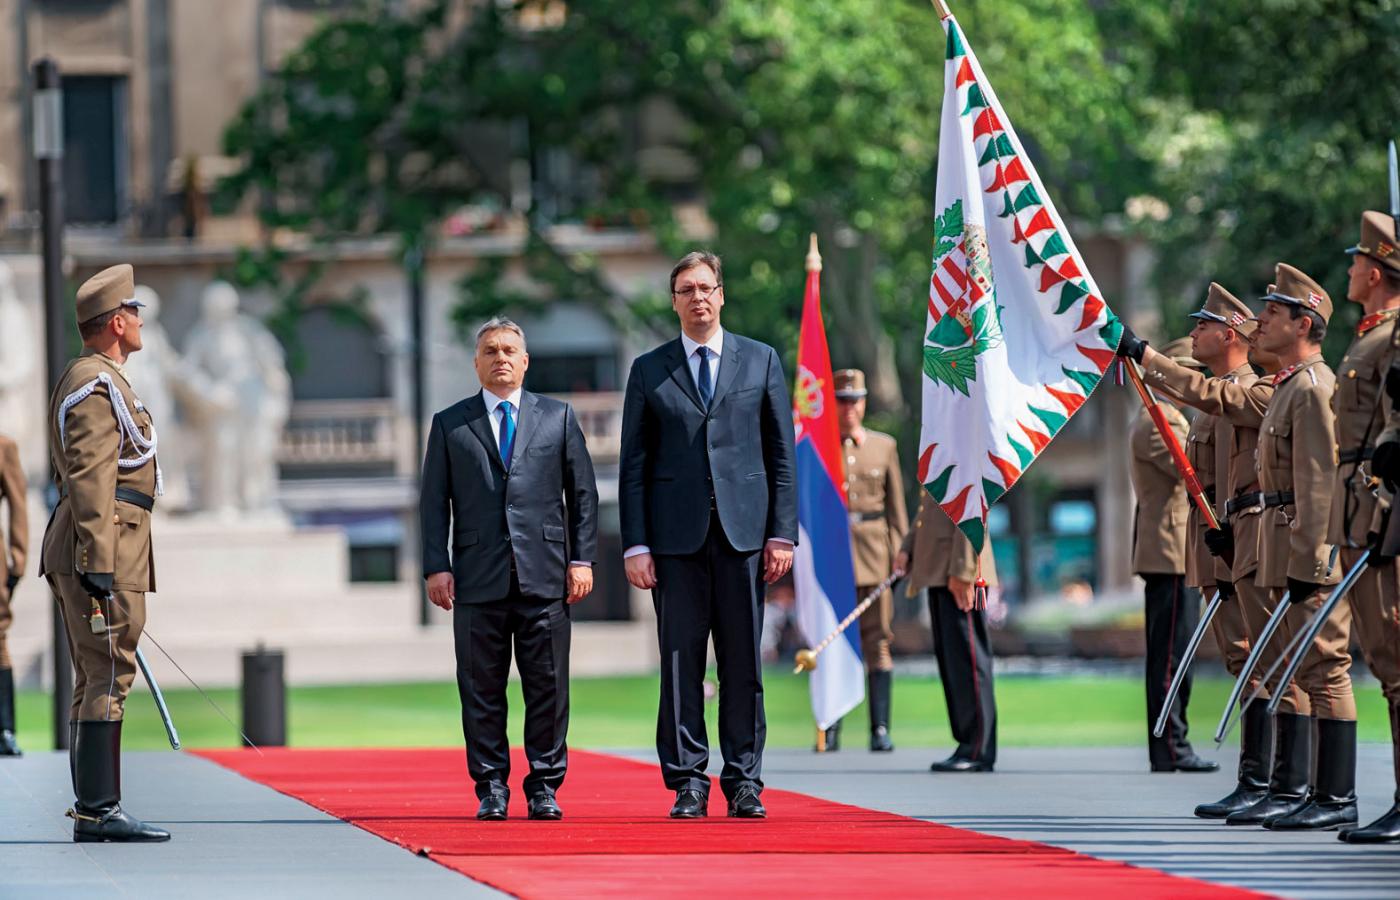 Premierzy Węgier i Serbii, Orbán i Vucić, promują w Europie Środkowej rosyjski model polityczny.